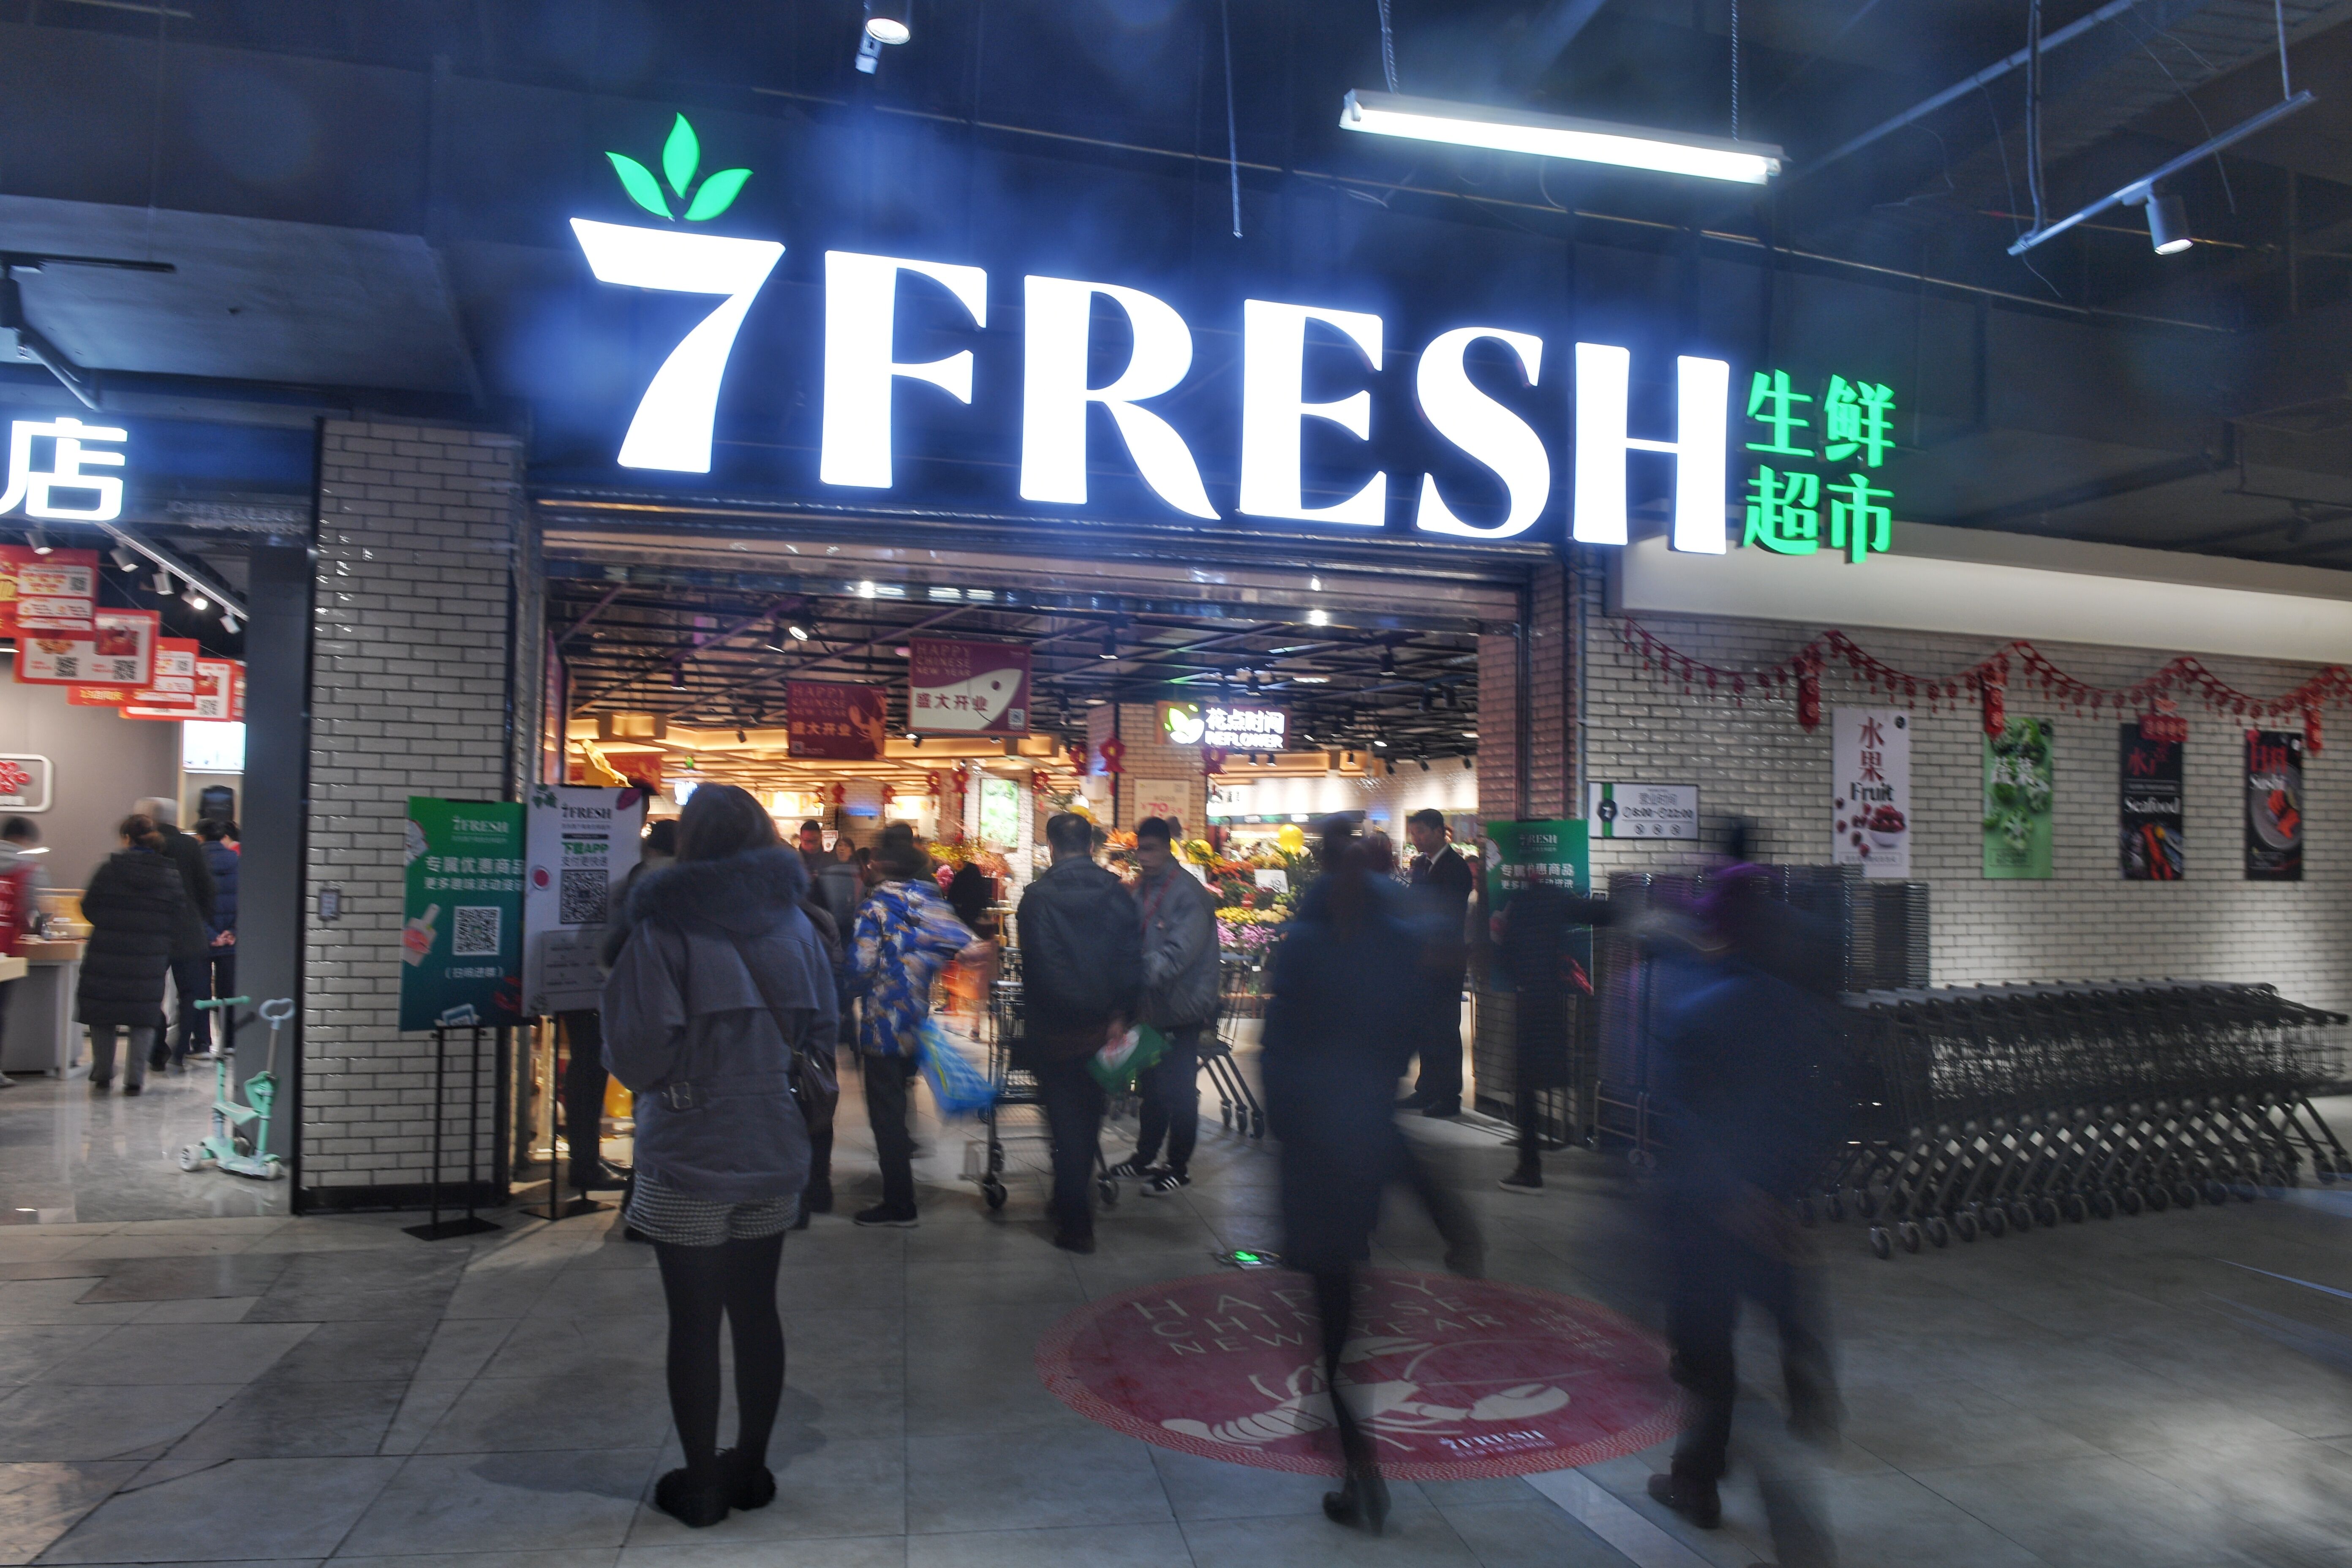 1月25日,7fresh西南首店在成都市成华区摩玛新城盛